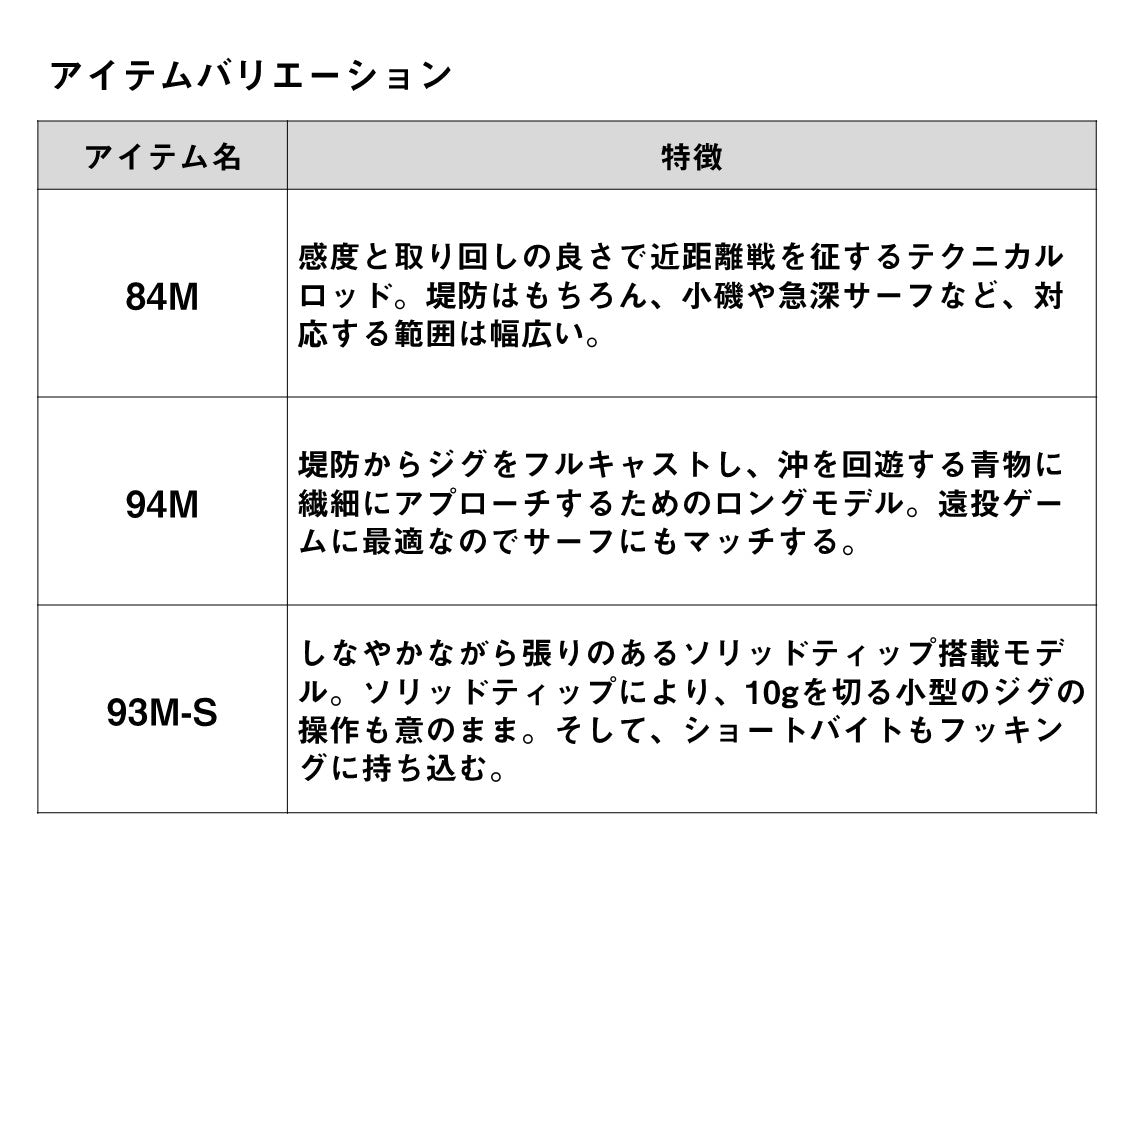 【ポイント10倍対象】ドラッガーX SLSJ 5月末発売予定 ご予約受付中